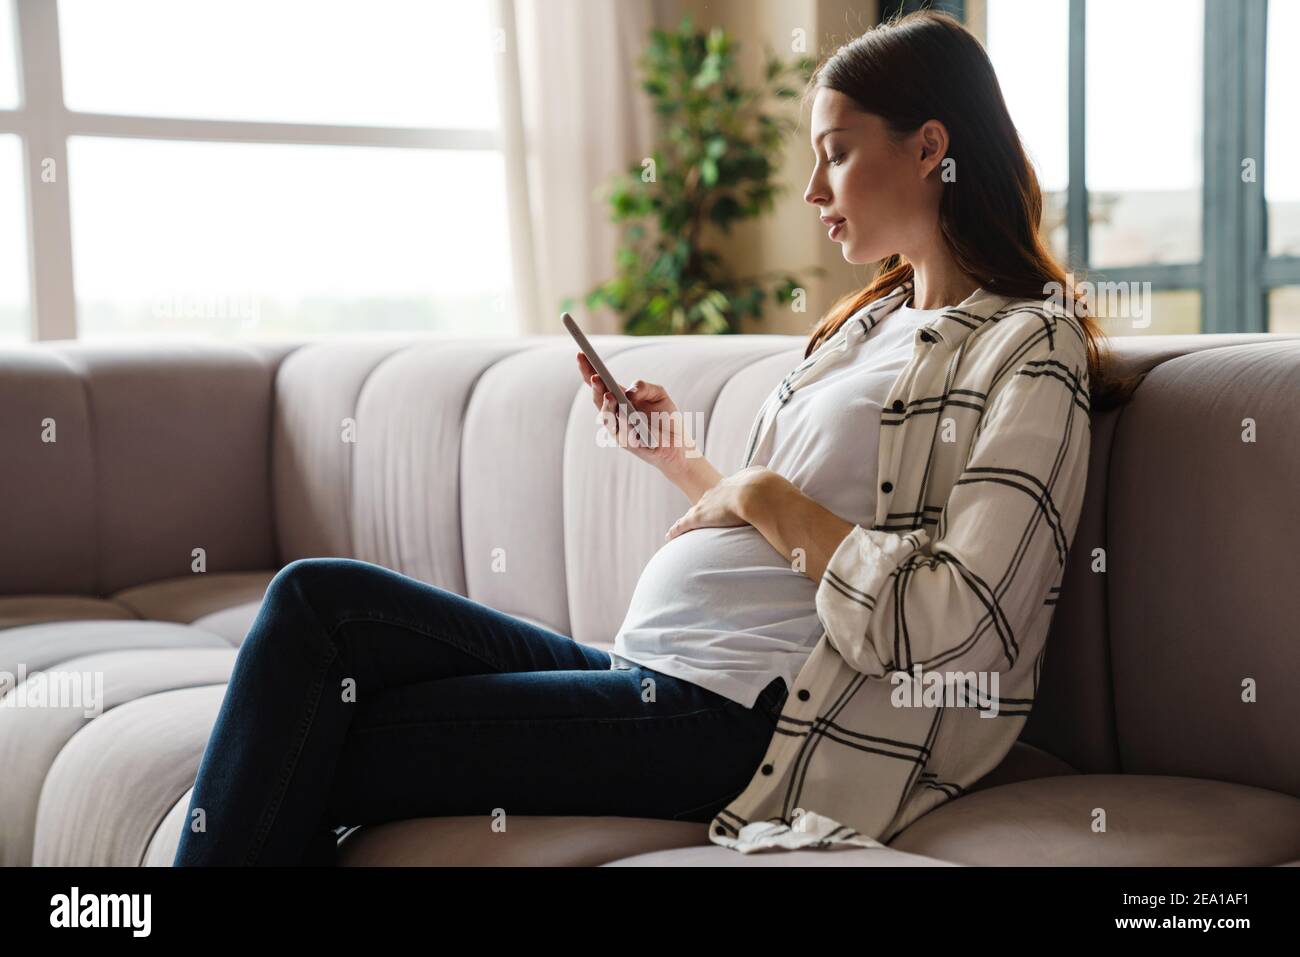 Femme enceinte charmante et concentrée utilisant un téléphone portable lorsqu'elle est assise canapé dans une chambre confortable Banque D'Images